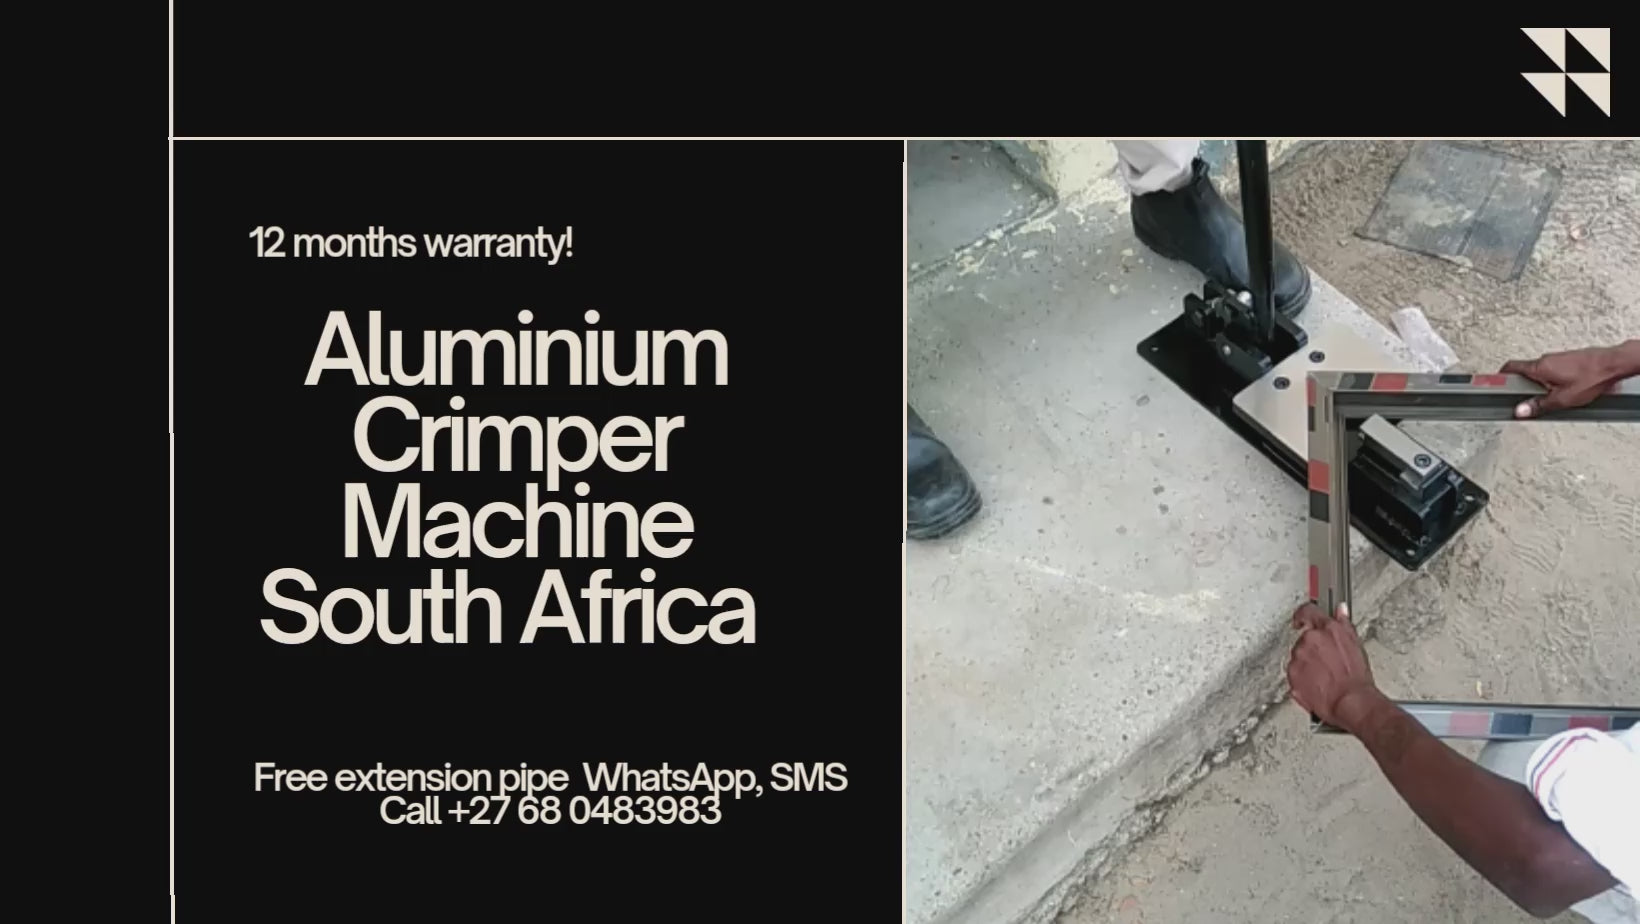 Aluminium Crimper Machine Video